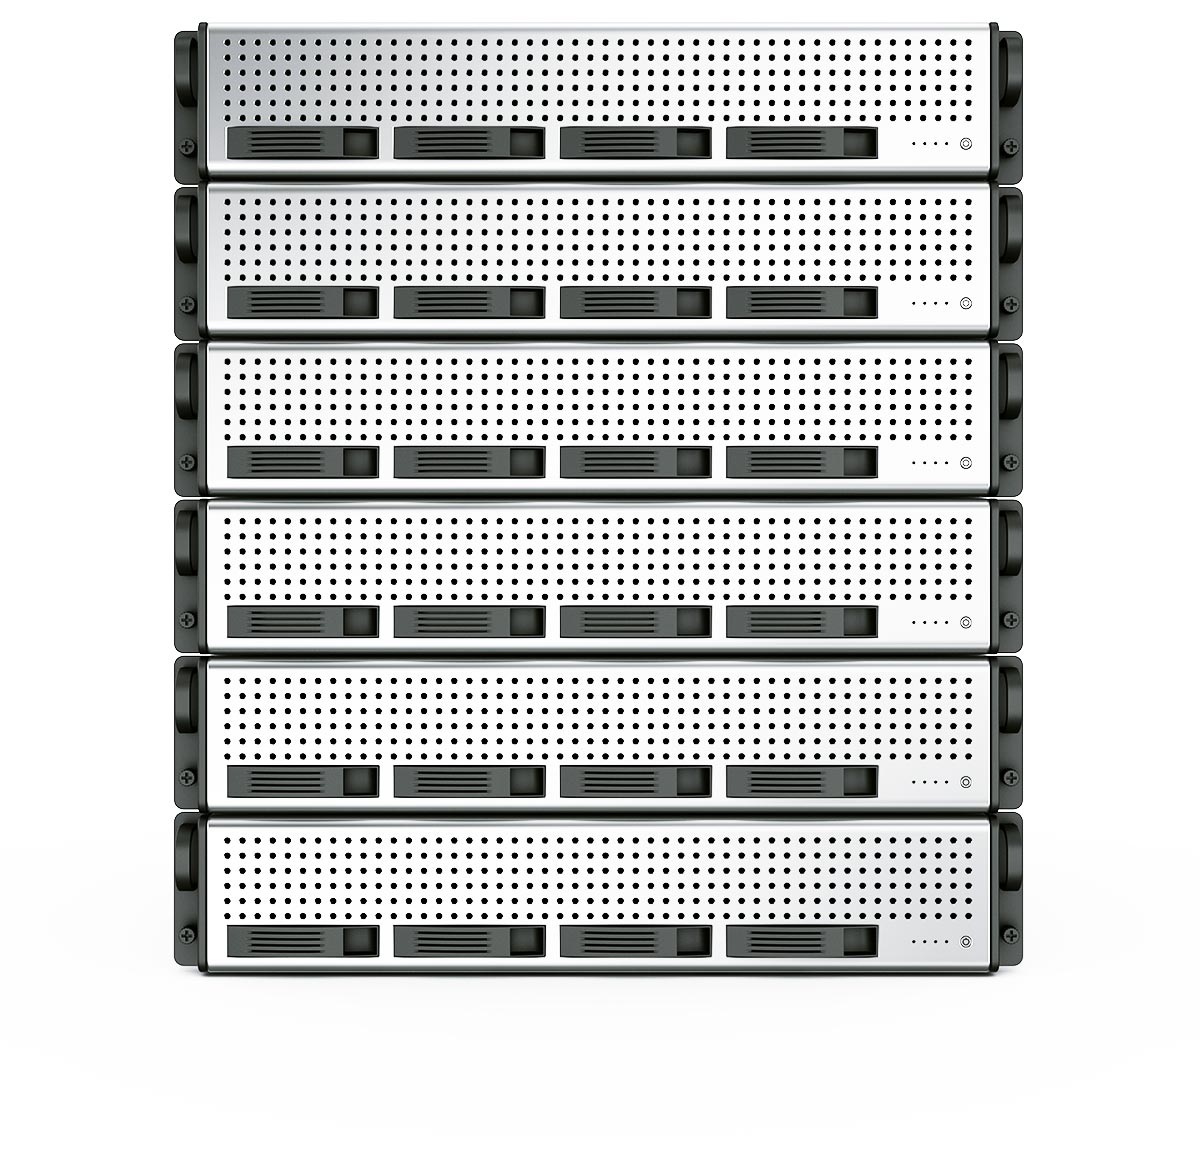 PRORED data center españa valencia rack servidores